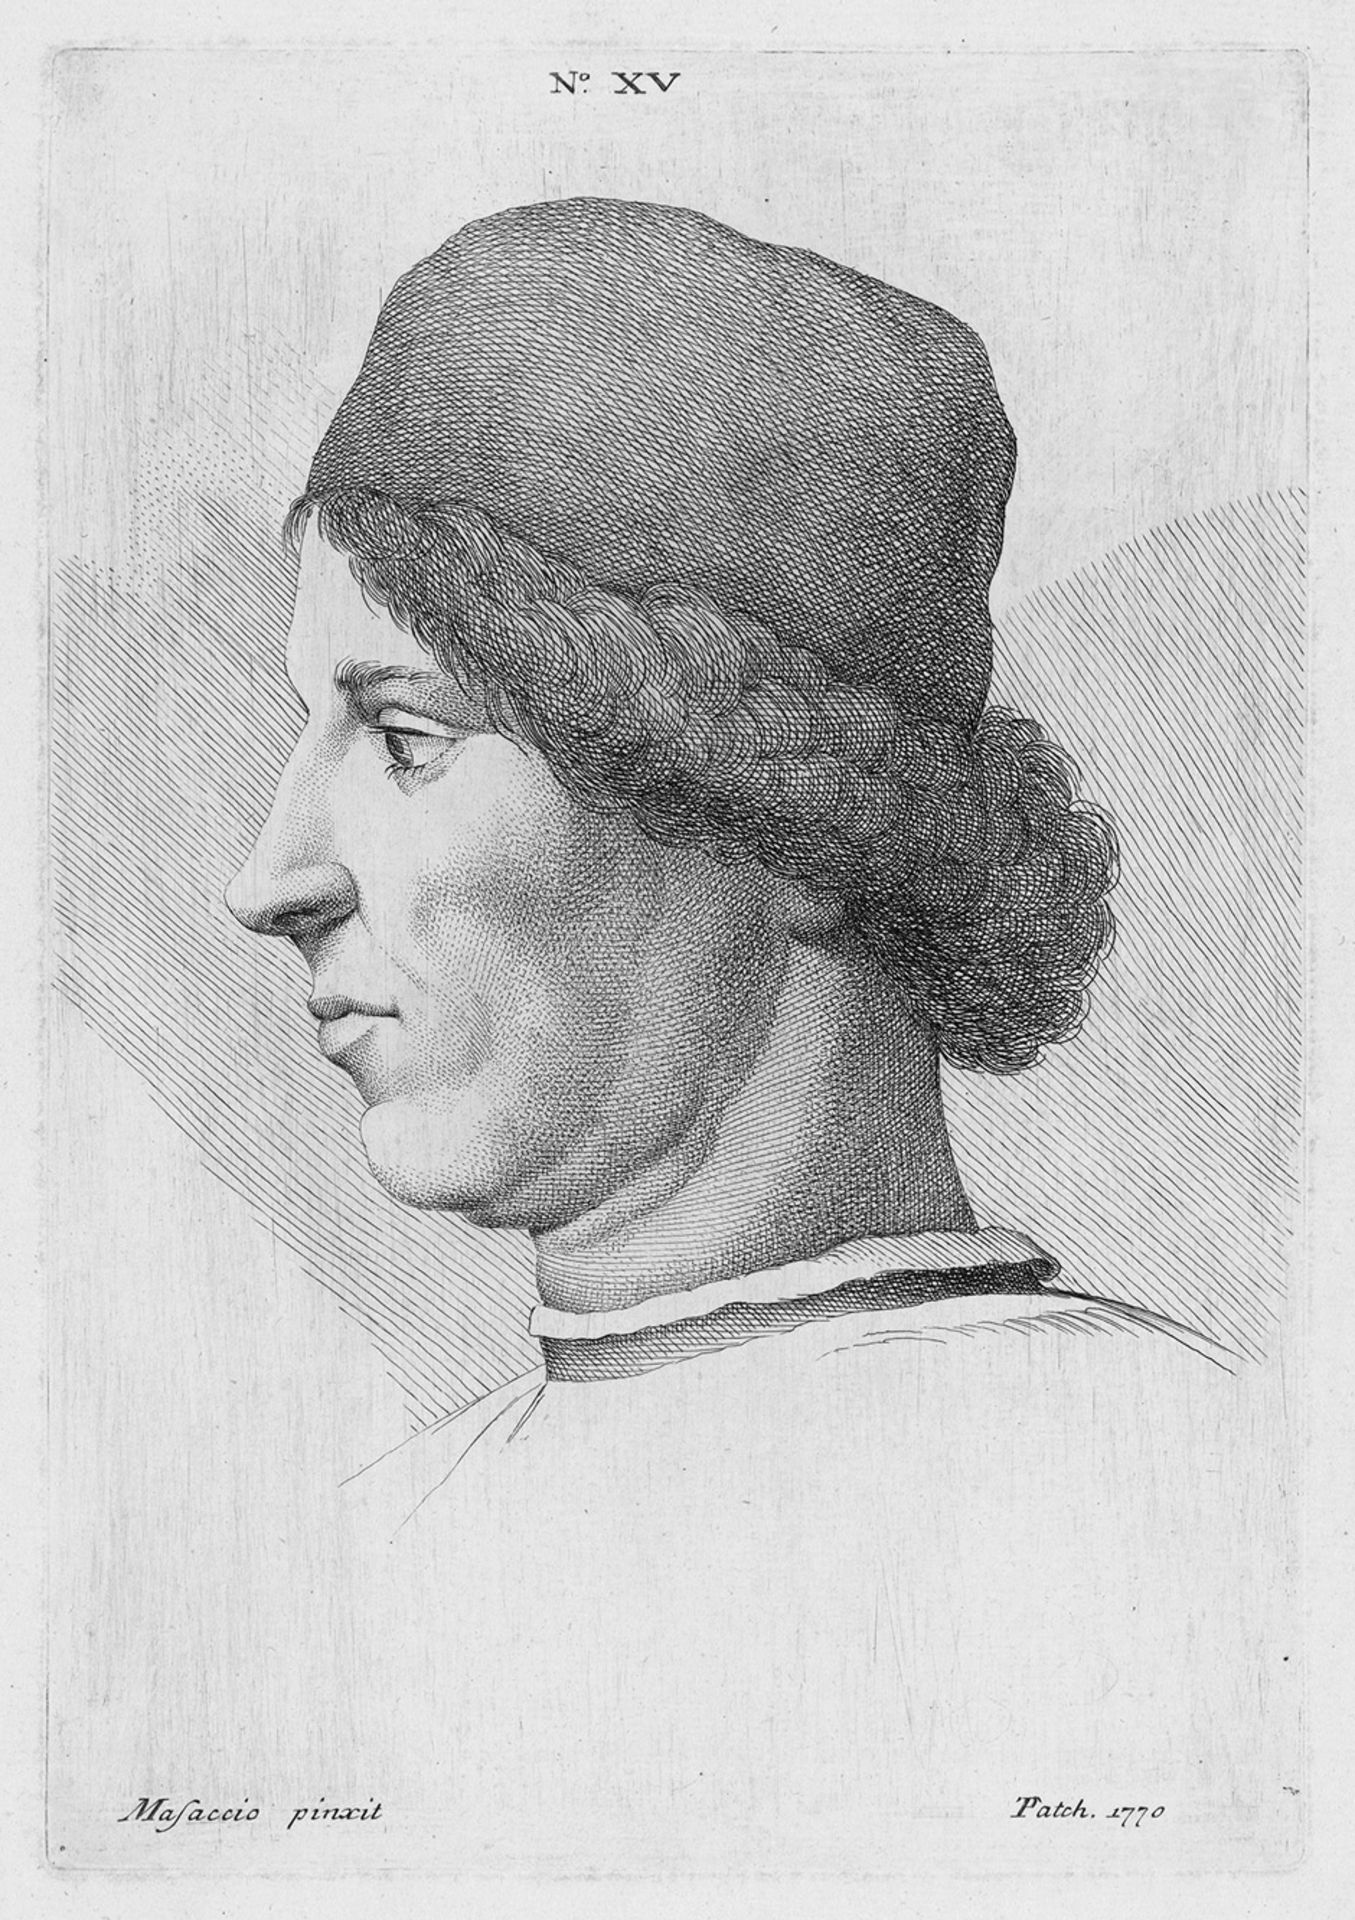 Patch, Thomas: Porträtköpfe Porträtköpfe. 11 (von 26) Radierungen nach Masaccio und Filippino Lippi.